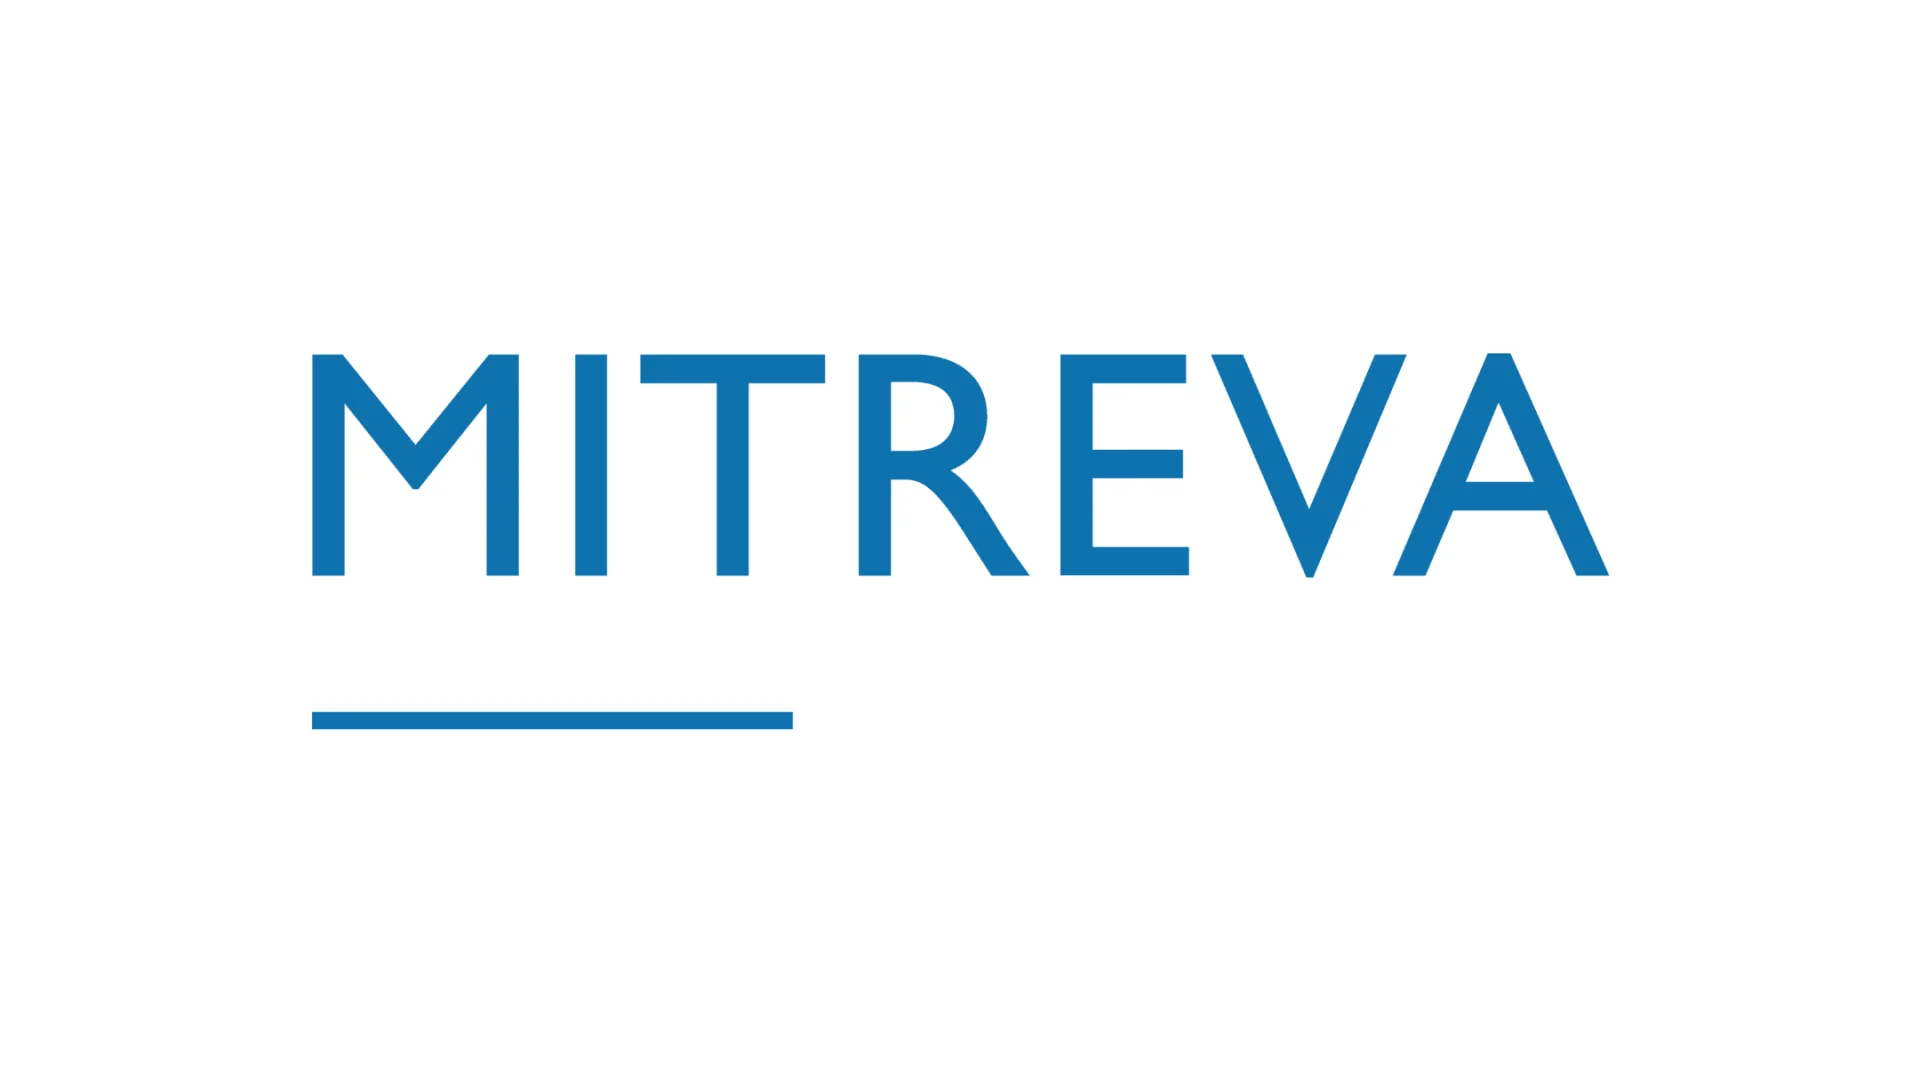 Logo de l'entreprise Mitreva. Lettres bleues sur fond blanc